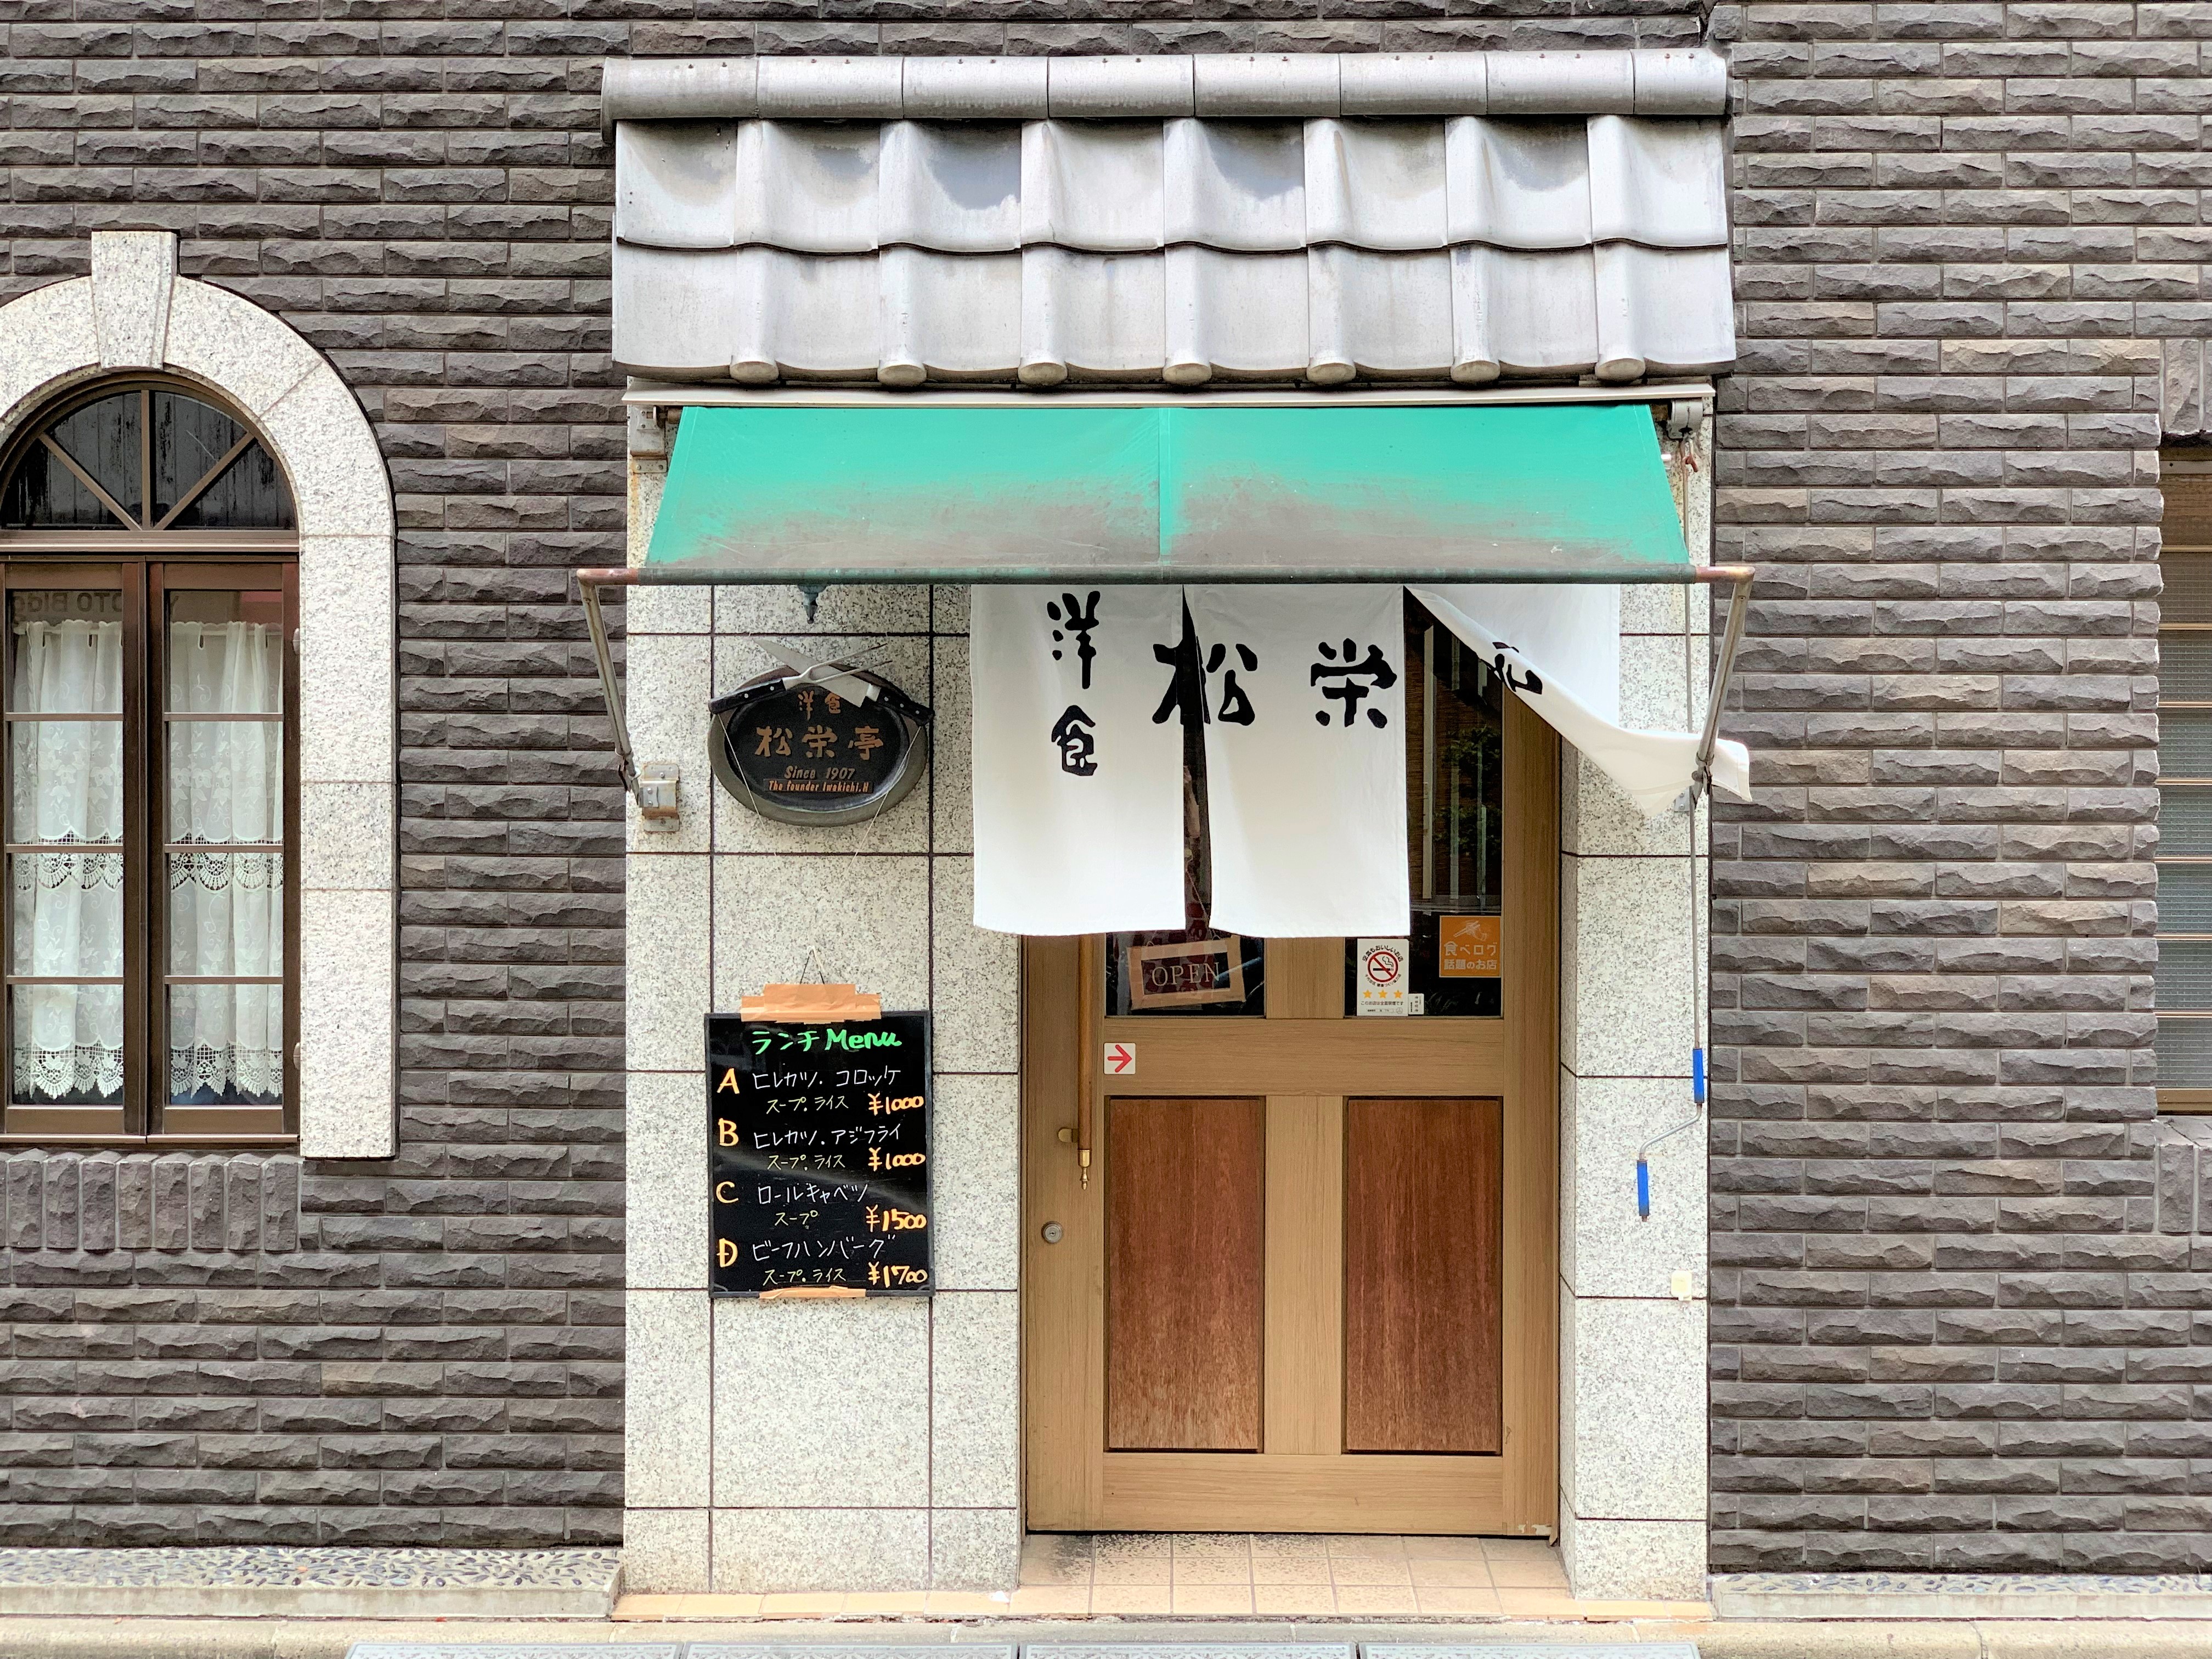 夏目漱石が愛した 洋風かきあげ を食べてみたら 実家に帰った感のある懐かしい味がした 東京神田 松榮亭 ロケットニュース24